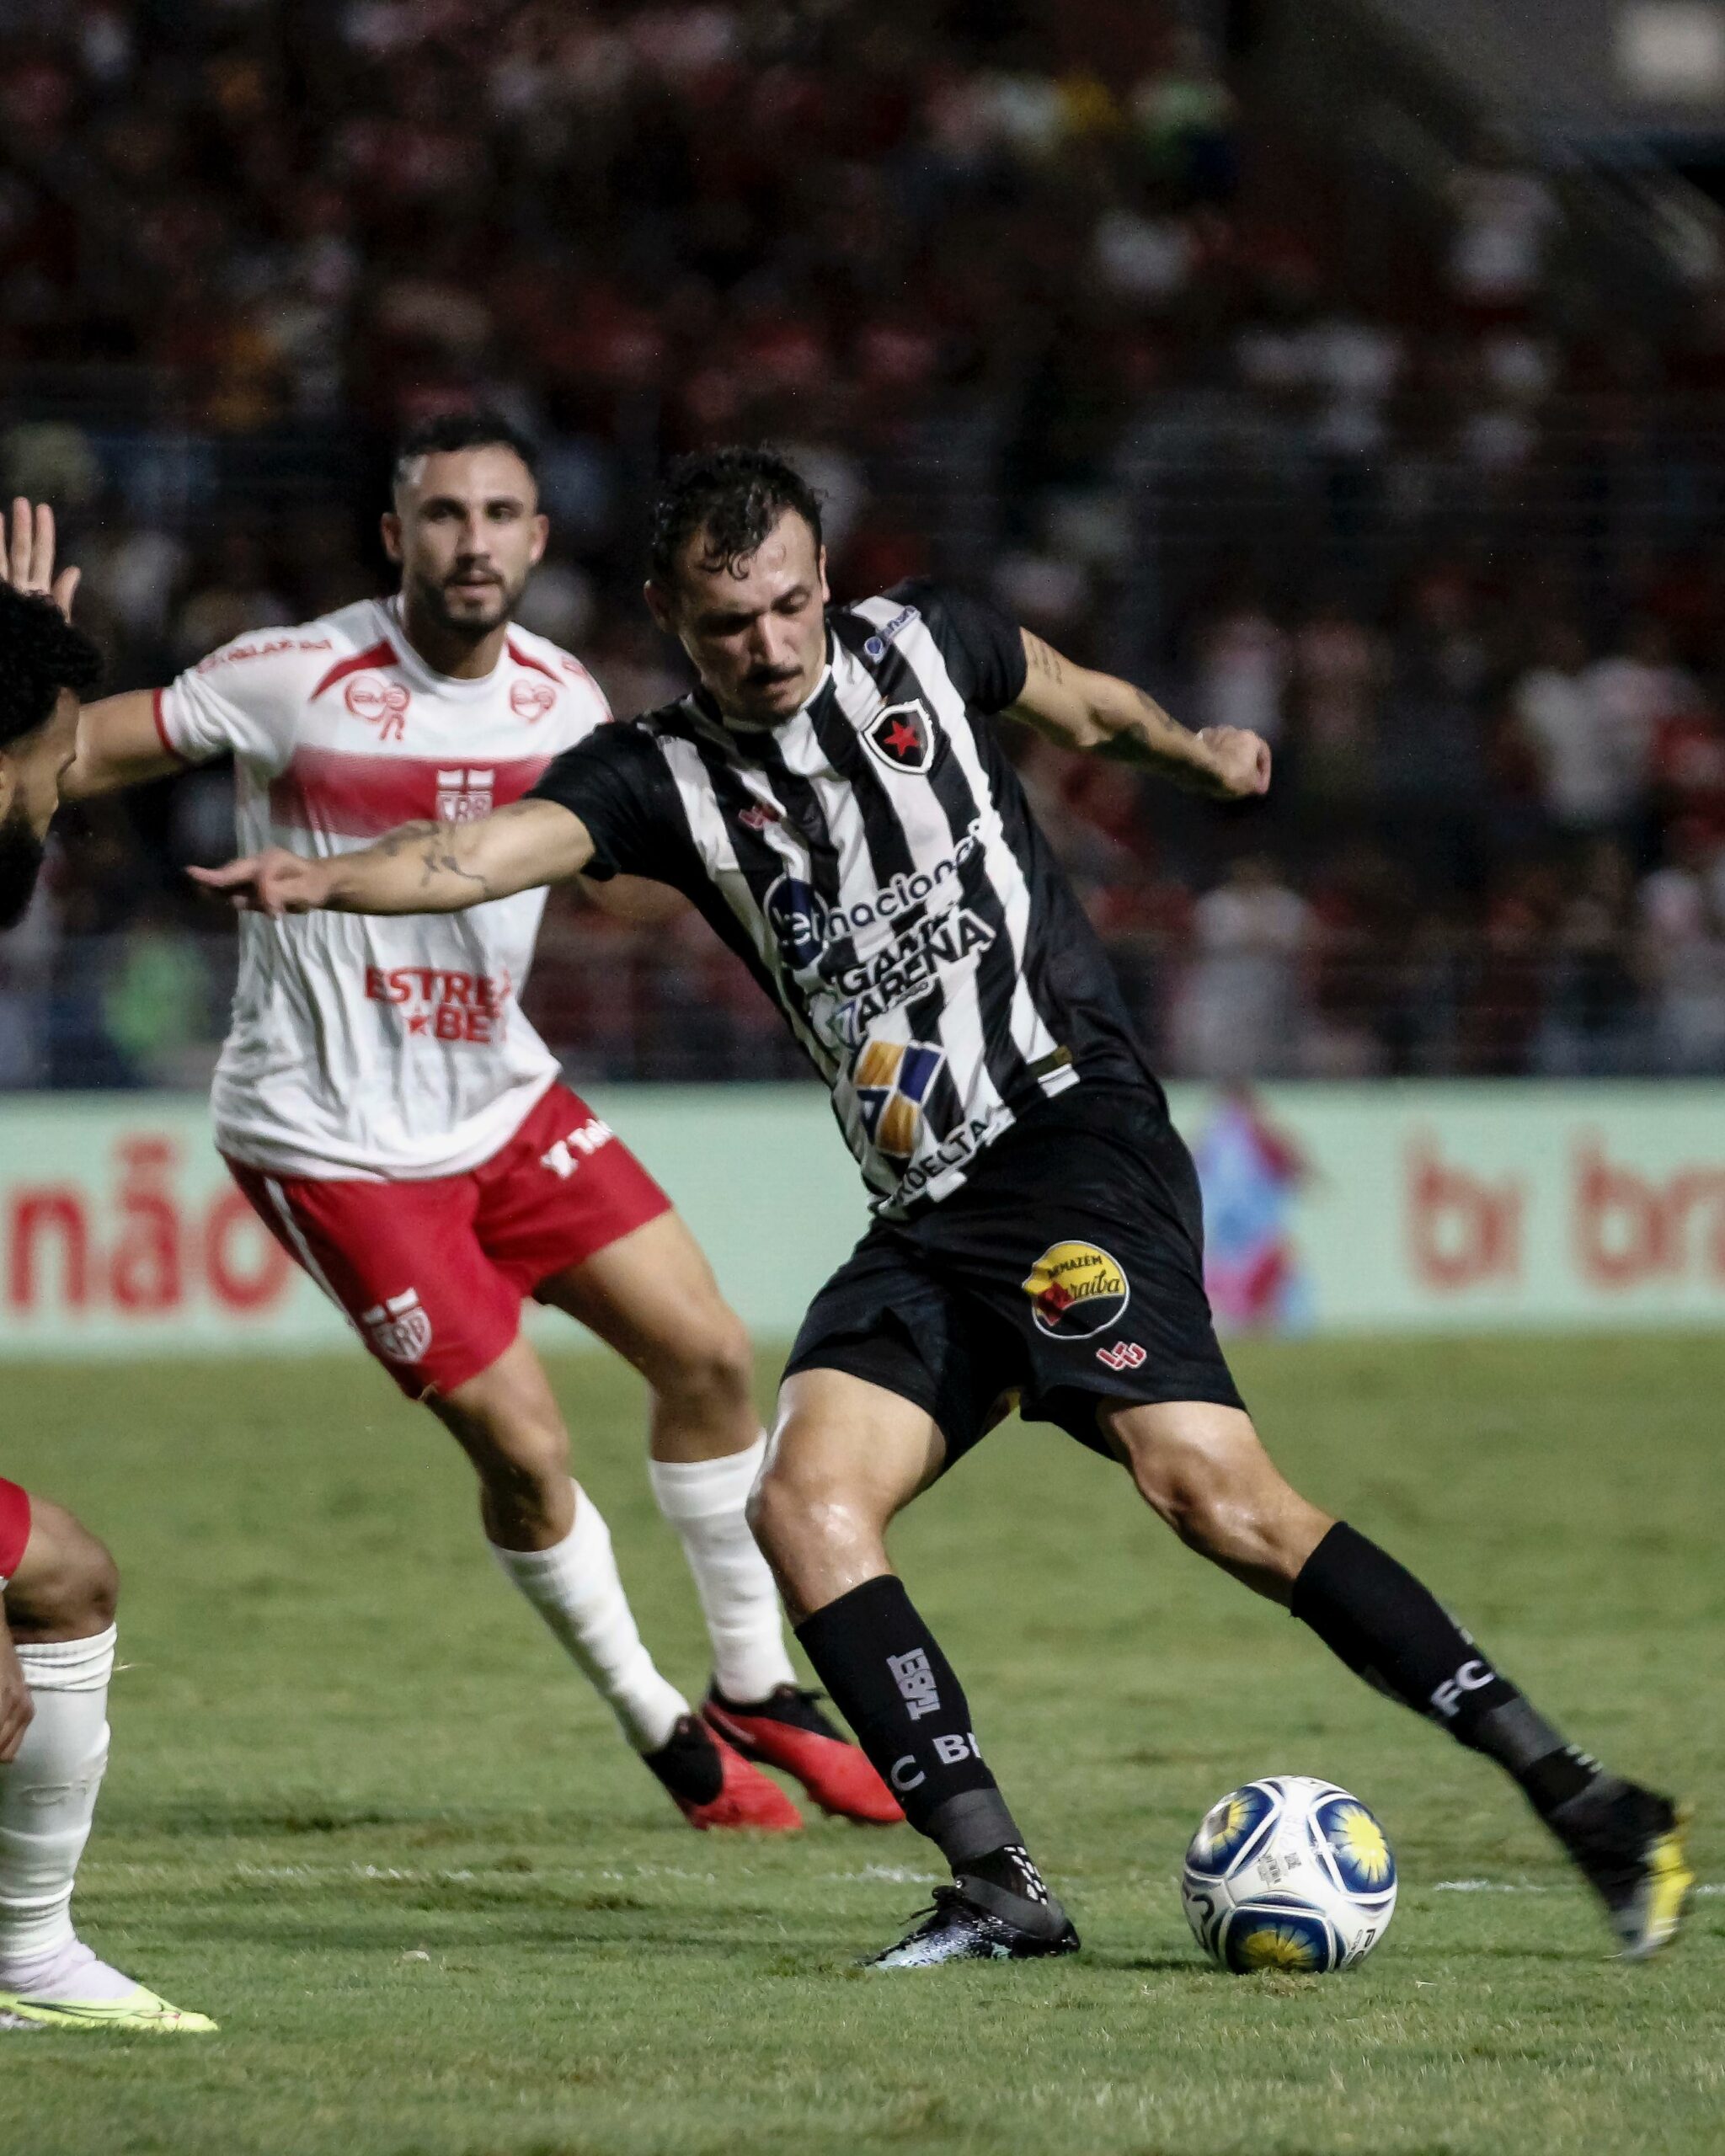 Eliminado nos pênaltis para o CRB da Copa do Nordeste, Botafogo decide no sábado titulo de campeão do Paraibano contra o Sousa